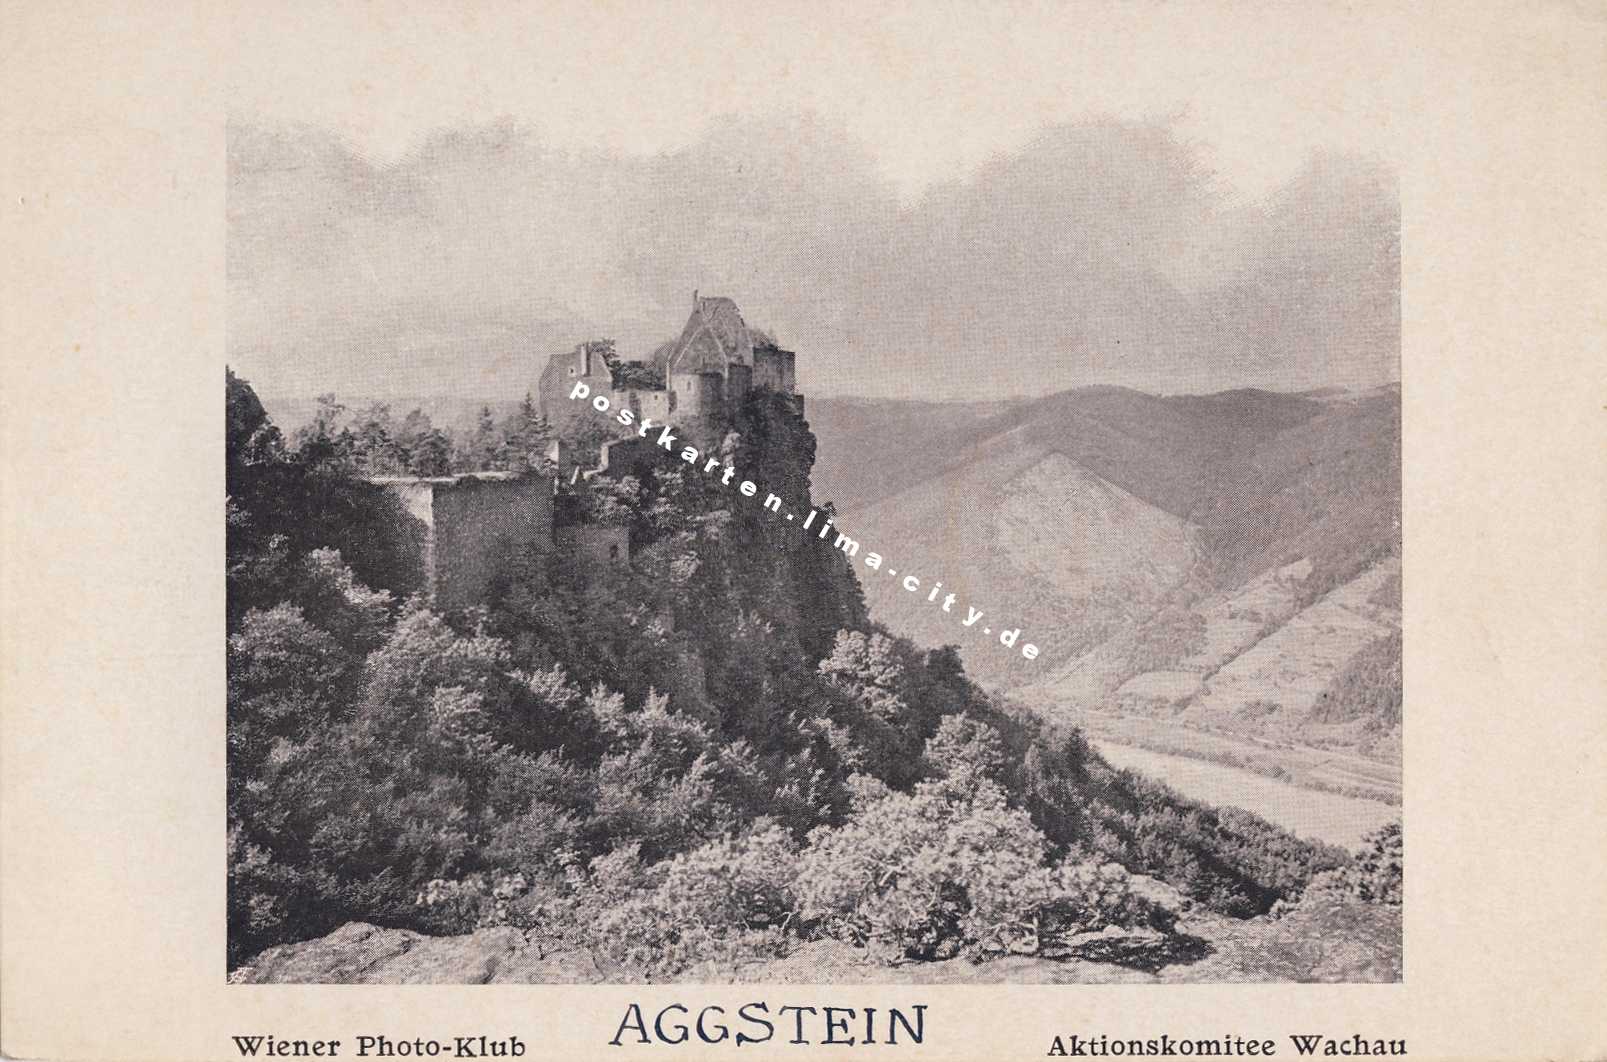 Aggstein - Sehr alte Fotografie 